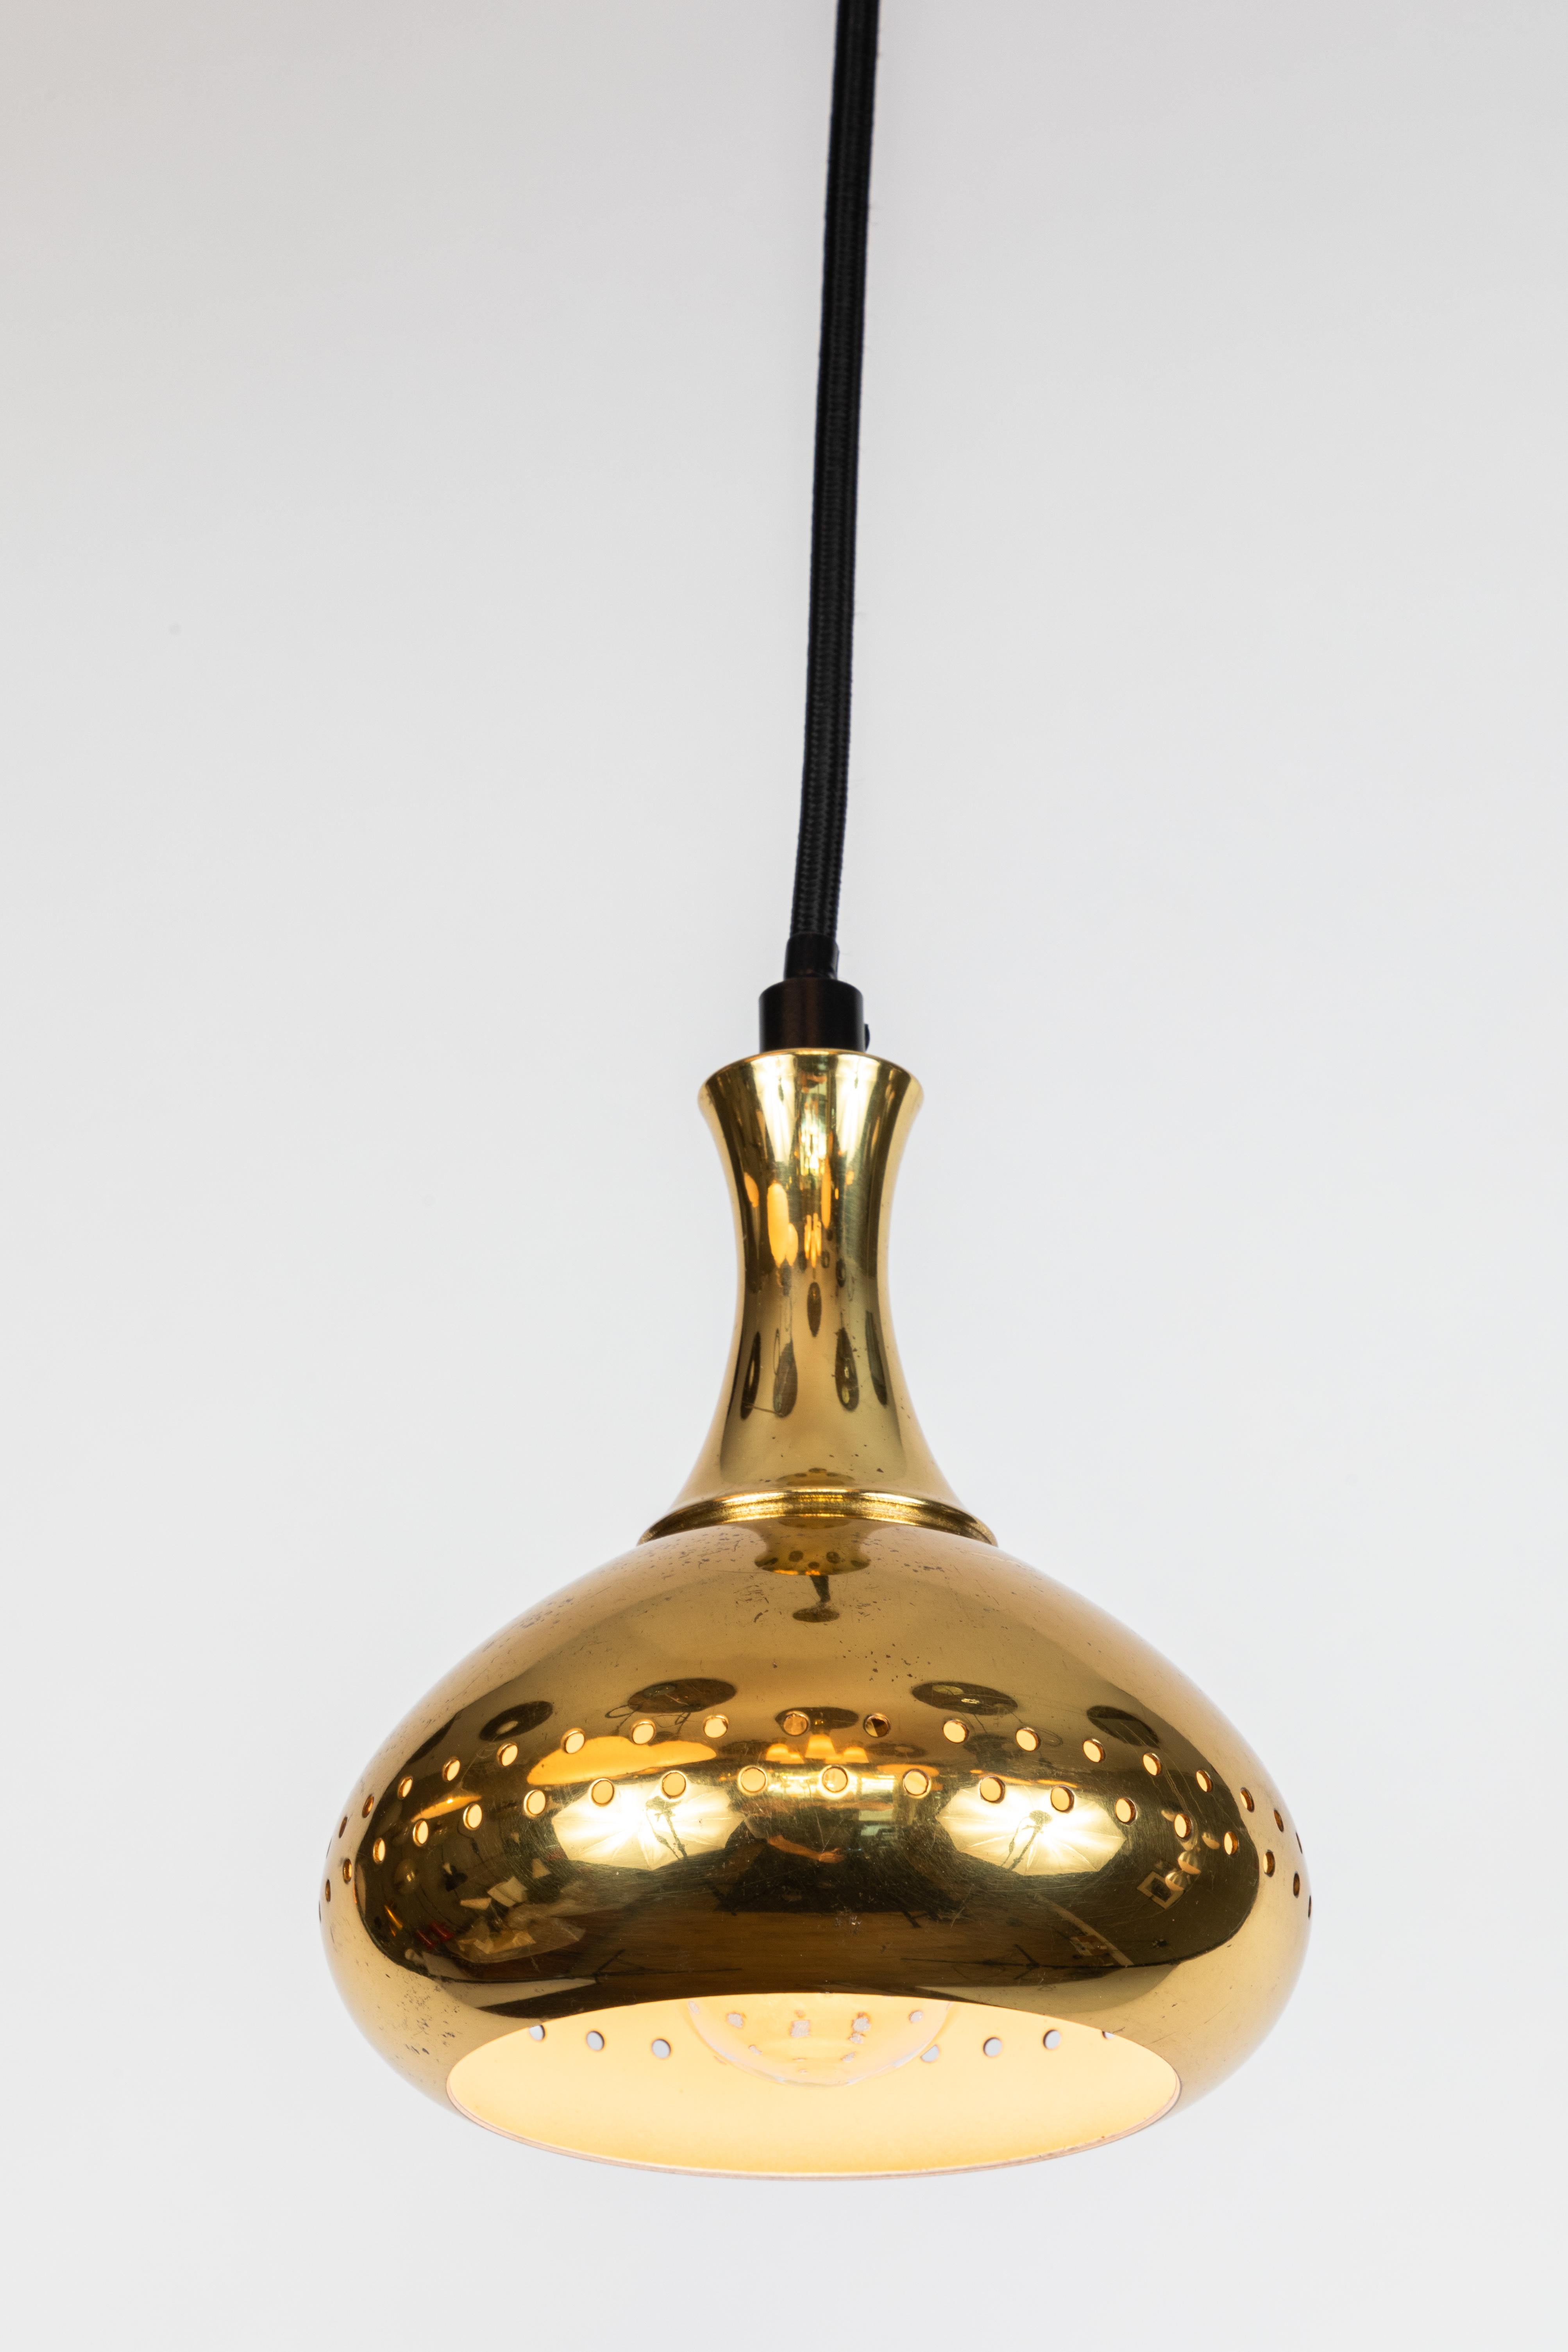 Lampes en suspension en laiton perforé Hans-Agne Jakobsson des années 1950 pour Markaryd, Suède. Doté de courbes scandinaves simples et d'une agréable patine laiton. Recâblage professionnel pour l'électricité américaine. La hauteur est facilement